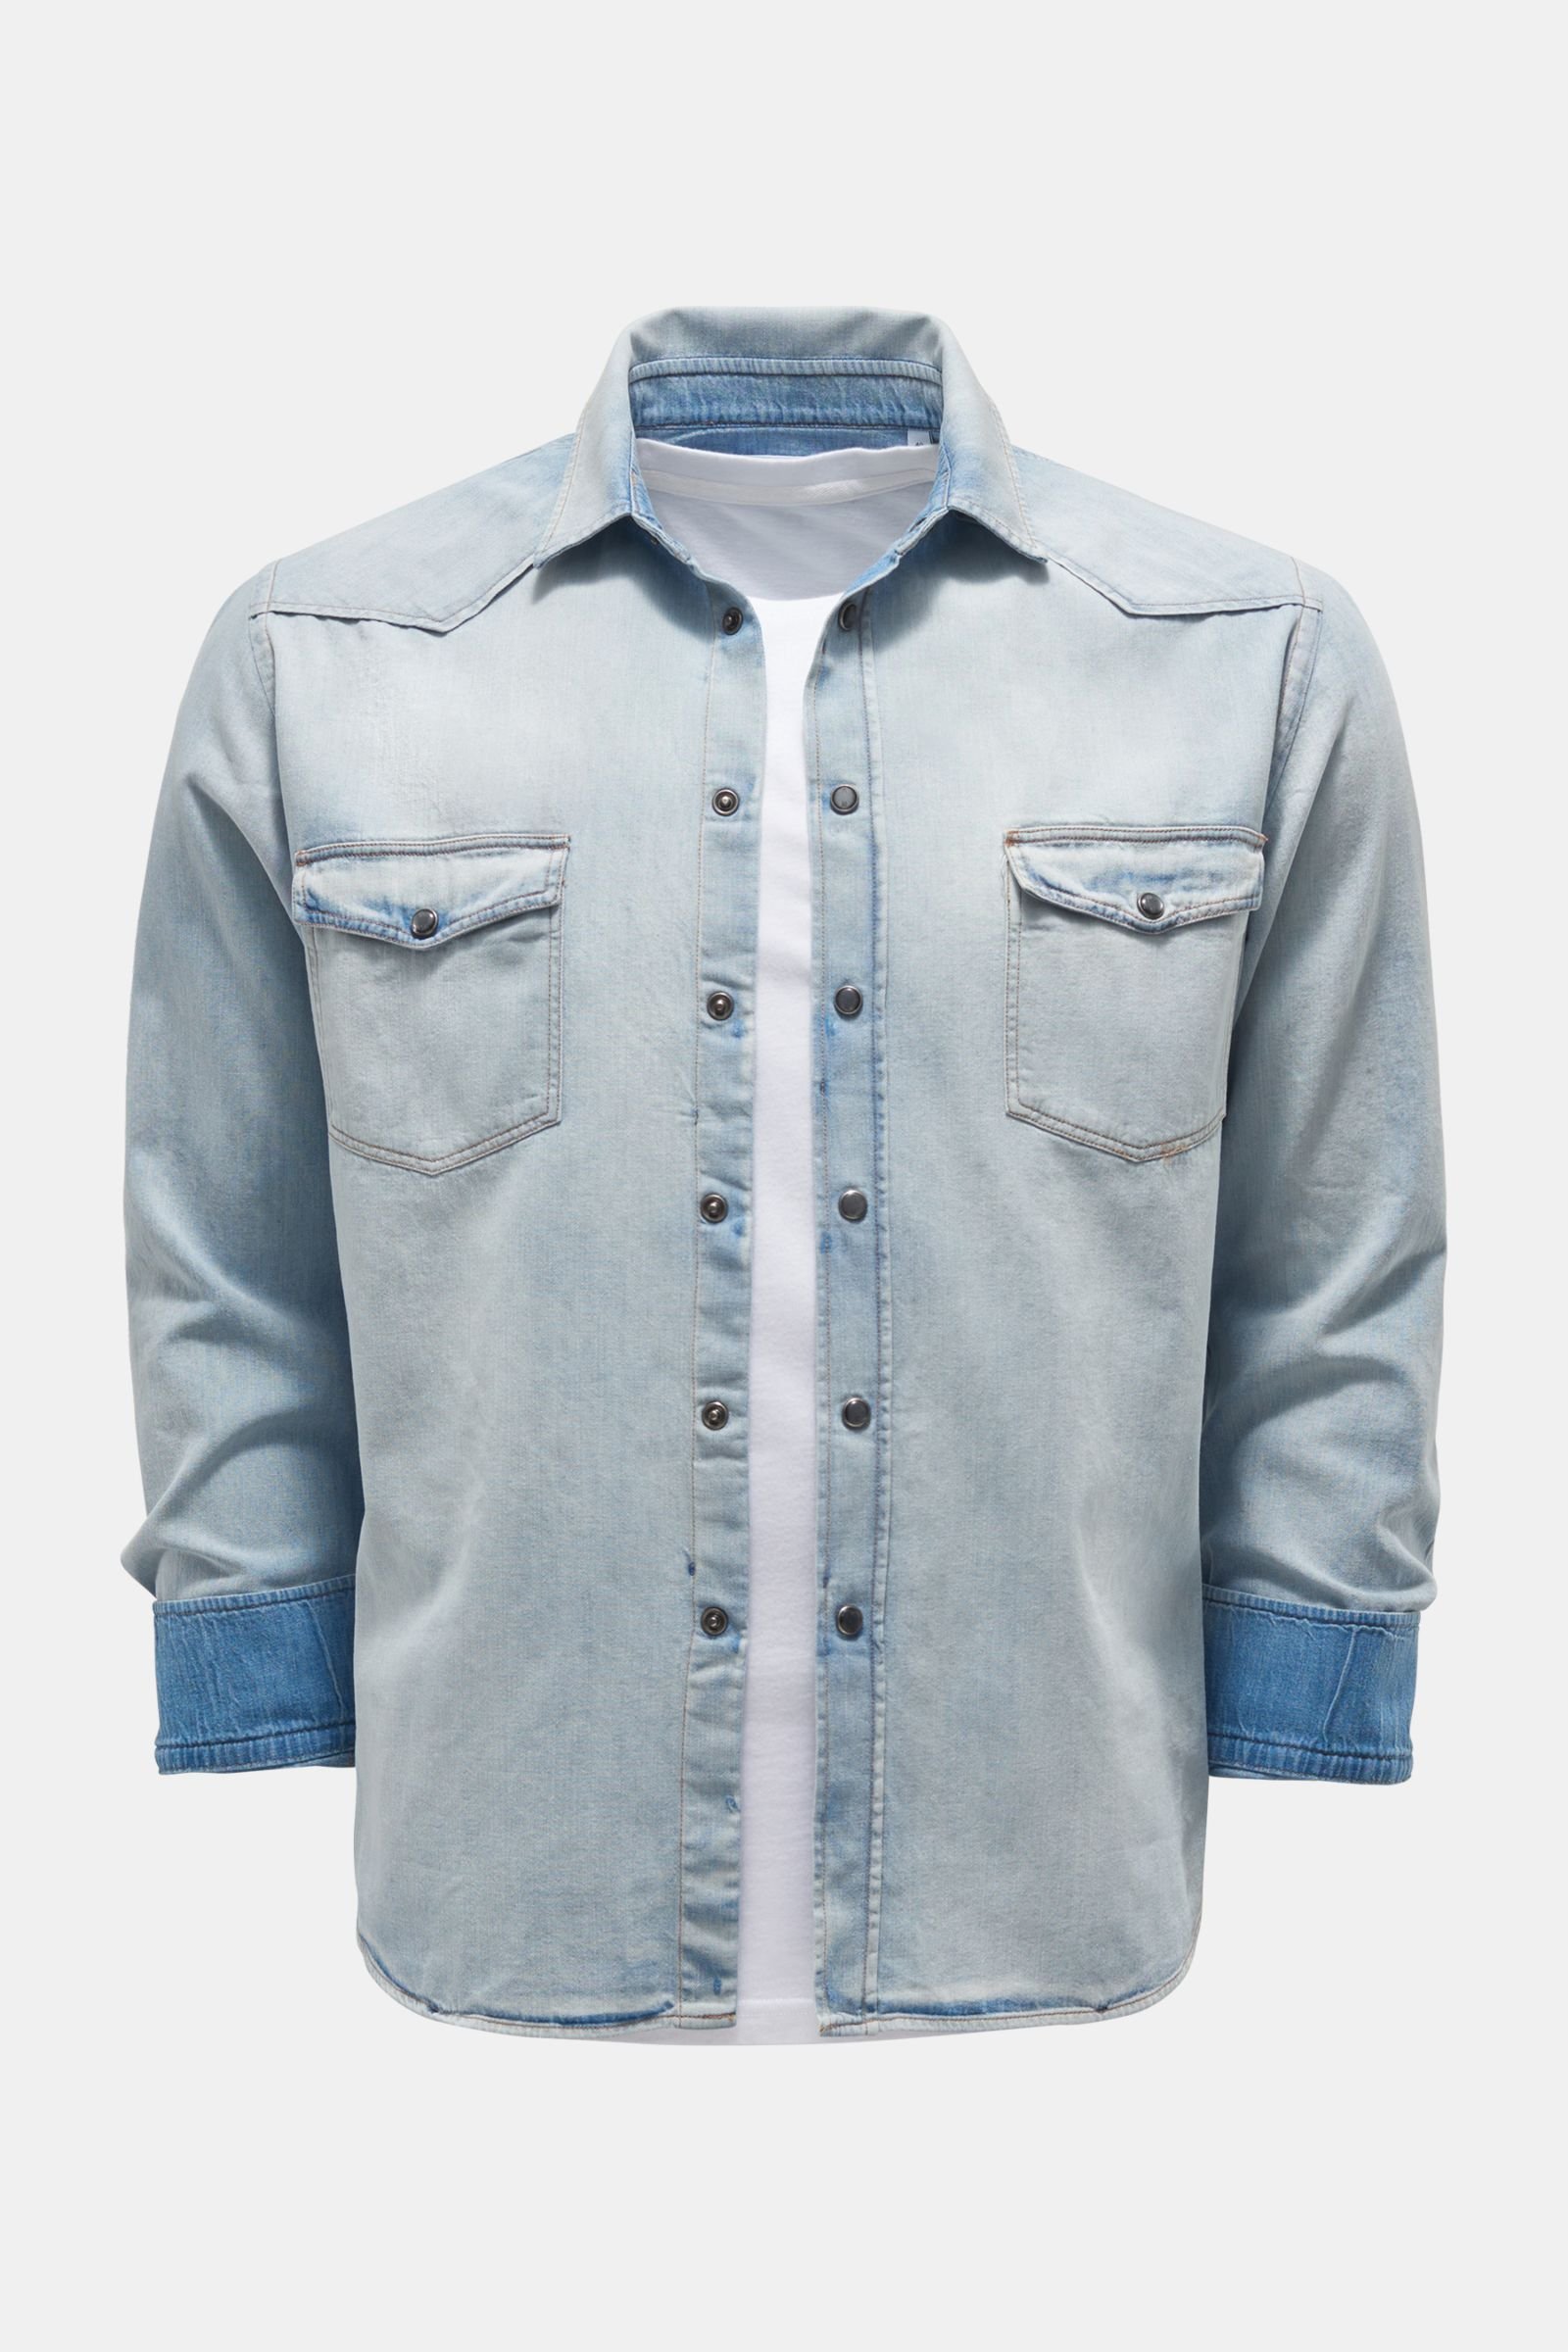 Denim shirt narrow collar light blue